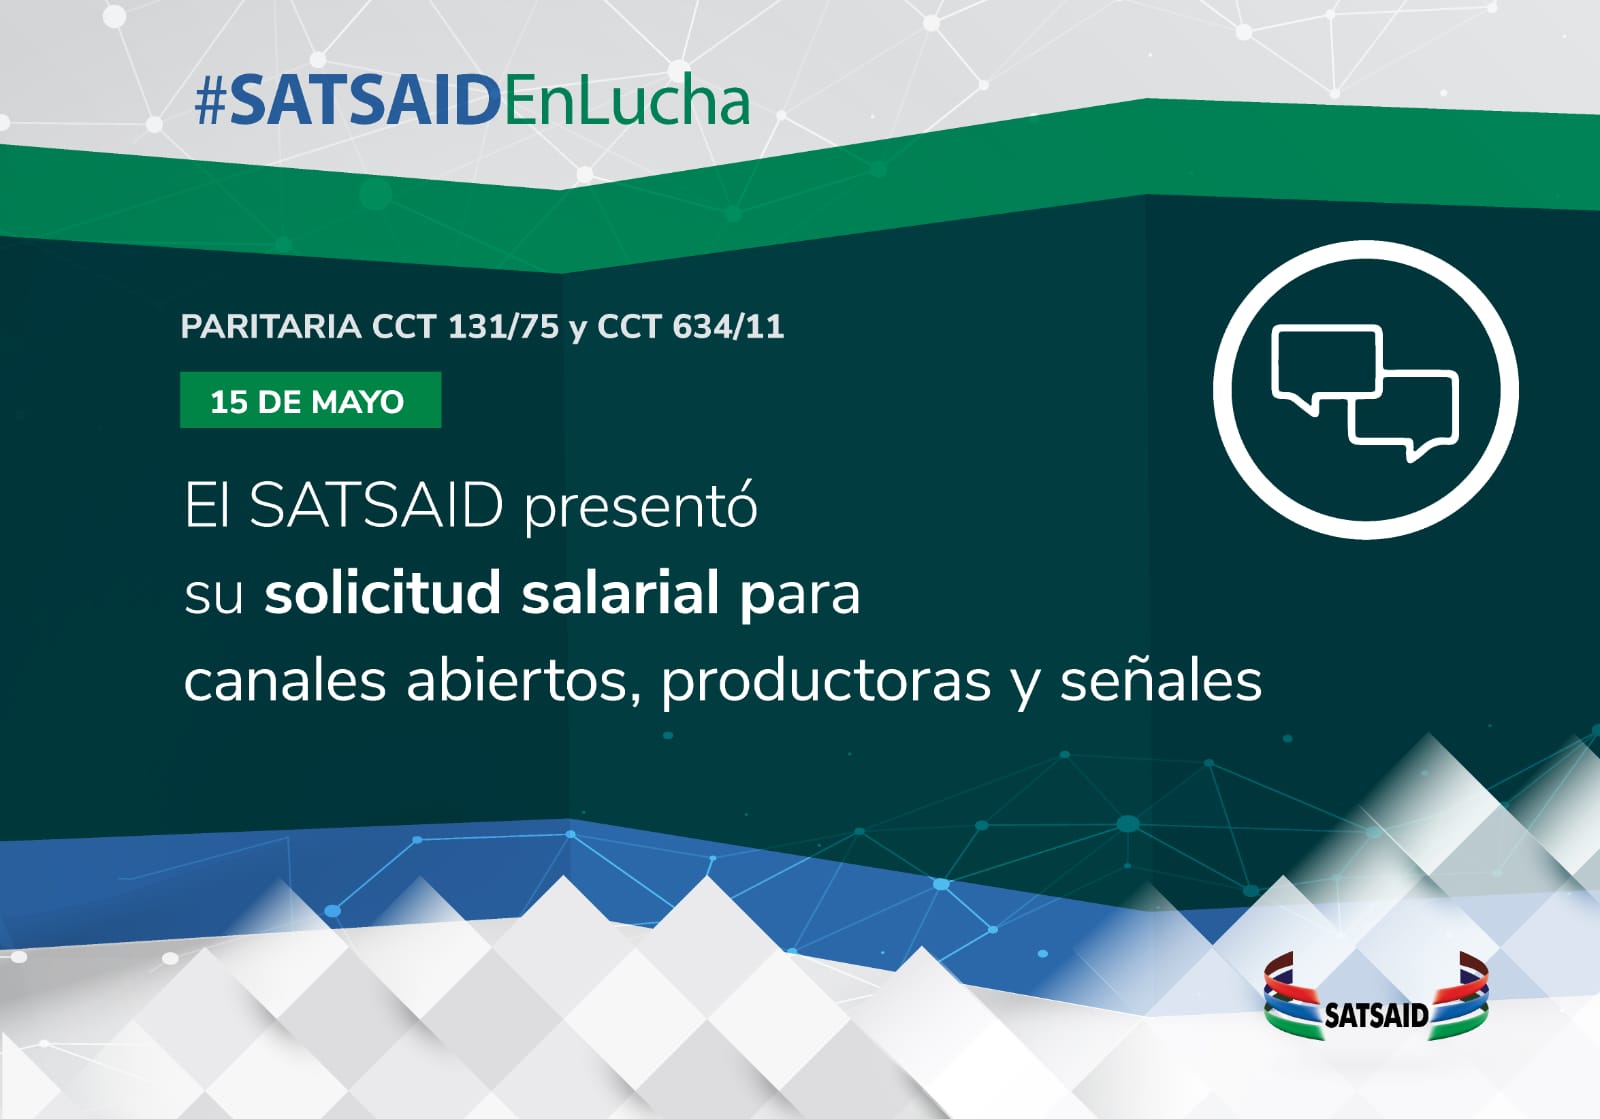 EL SATSAID PRESENTÓ SU SOLICITUD SALARIAL PARA CANALES ABIERTOS, PRODUCTORAS Y SEÑALES